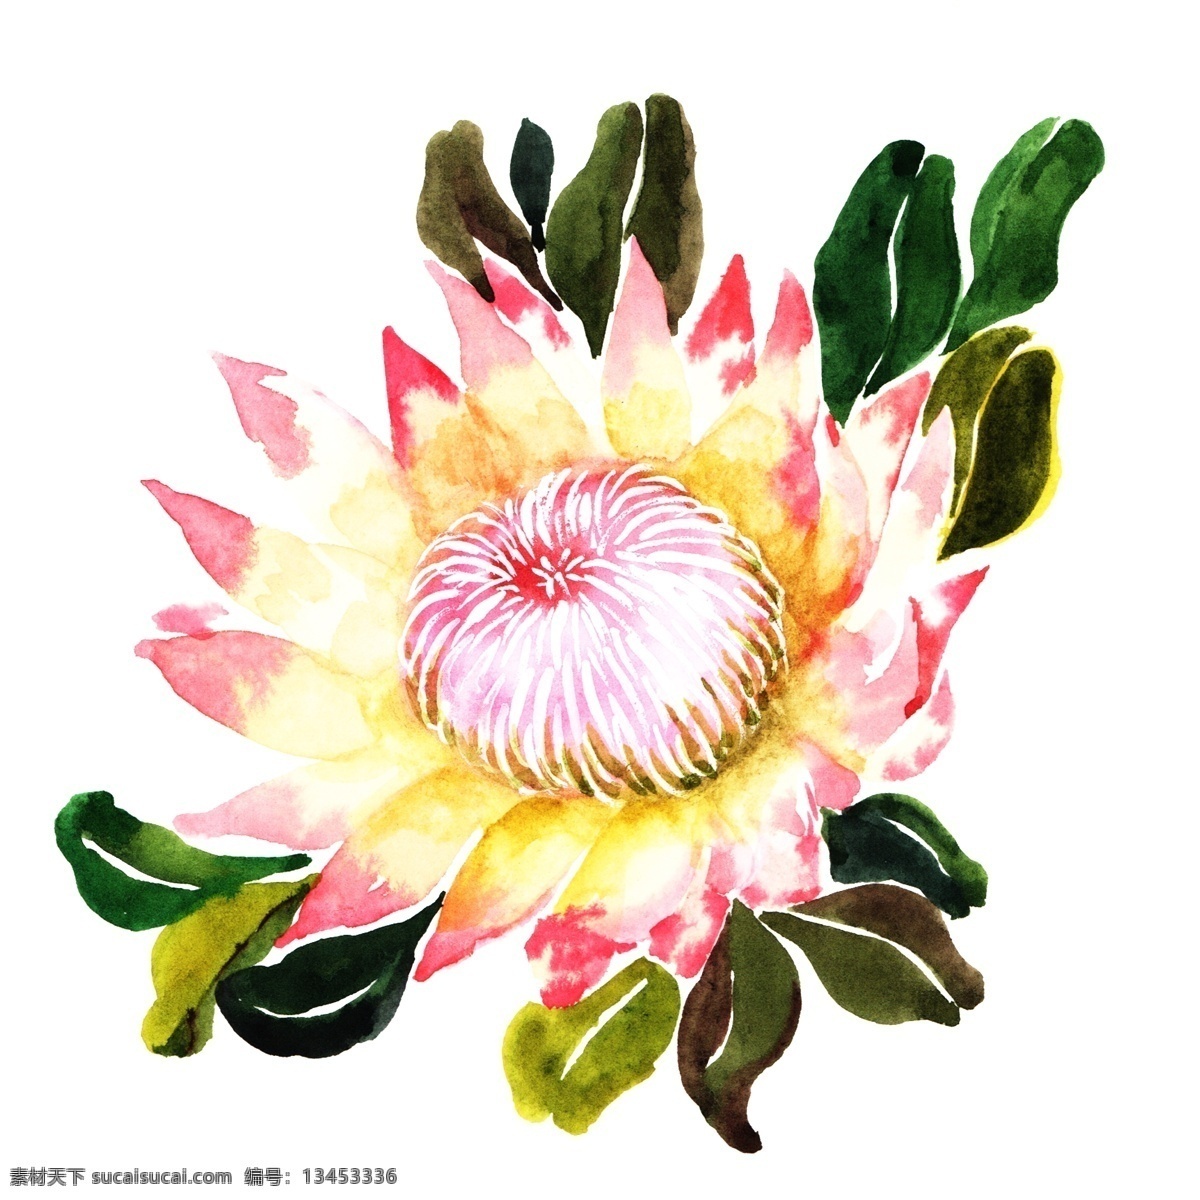 手绘 粉色 牡丹花 插画 手绘牡丹花 粉色花朵 鲜花 水彩牡丹花 绿色的叶子 植物 花瓣 牡丹花插画 漂亮的花朵